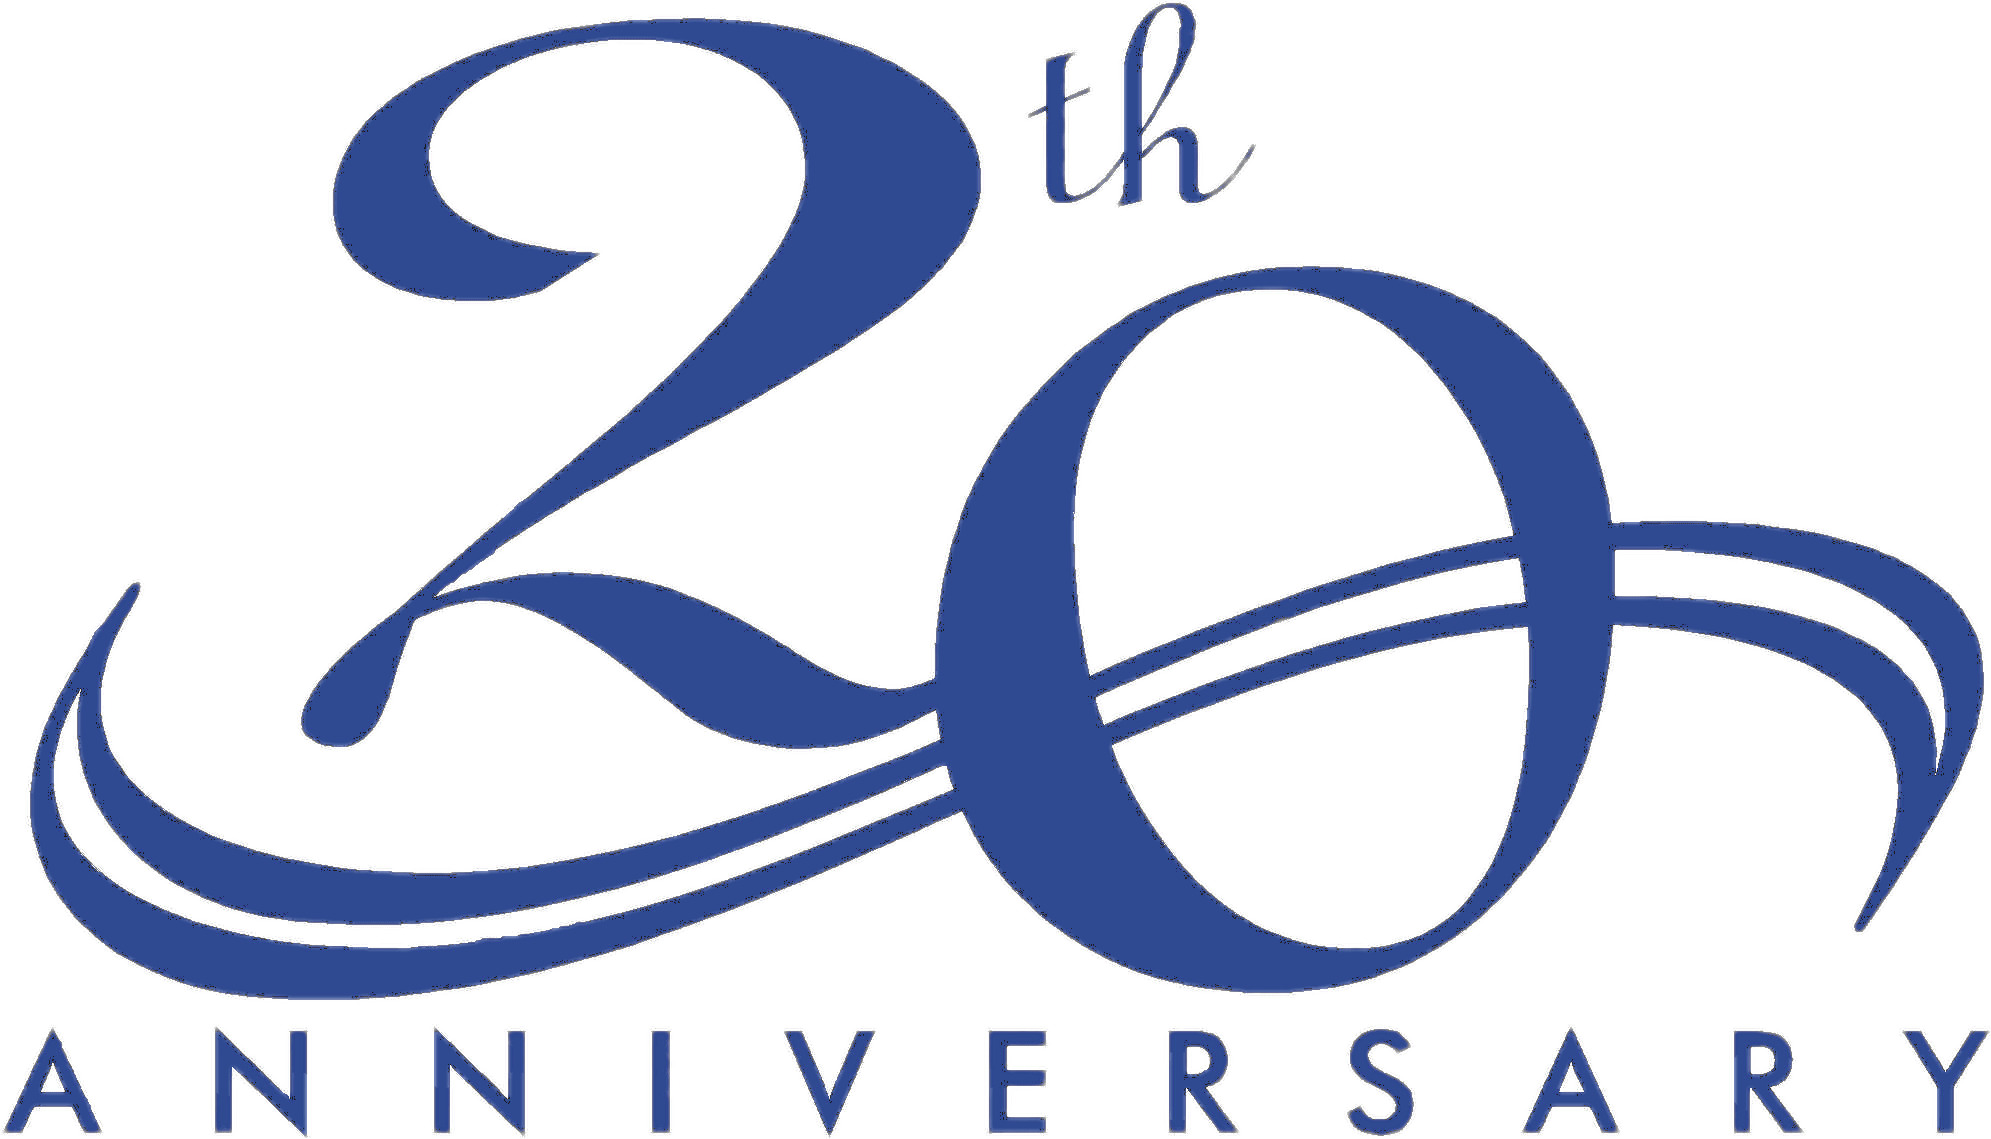 20th Anniversary Blue Elegant icons